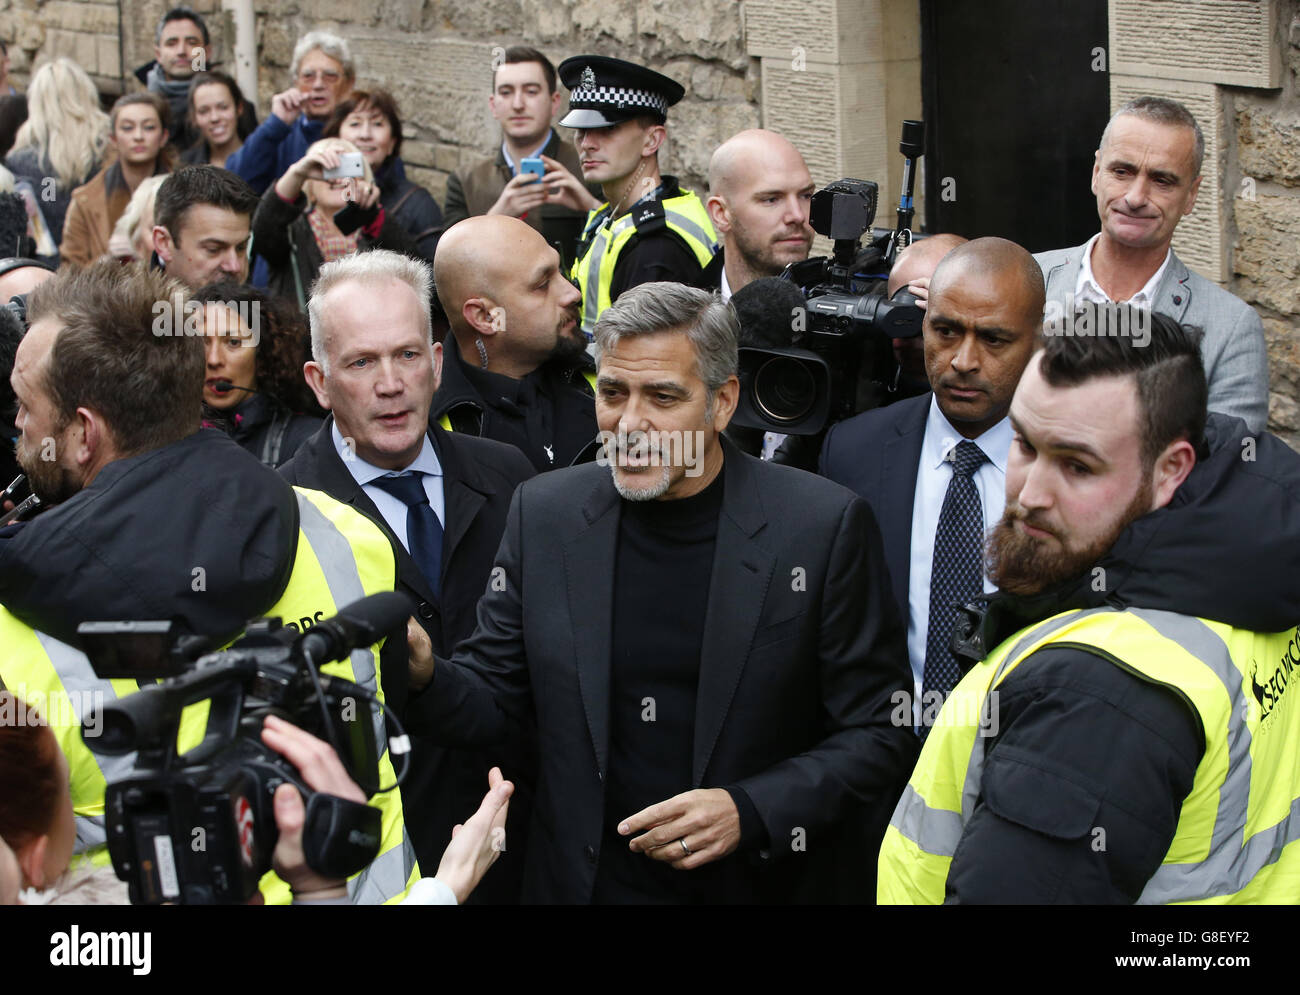 George Clooney ist von Medien und Fans umgeben, als er in einem Social Bite Café in Edinburgh ankommt, nachdem er eine Einladung angenommen hat, Arbeiter im Sandwich-Laden zu treffen, der Obdachlosen hilft. Stockfoto